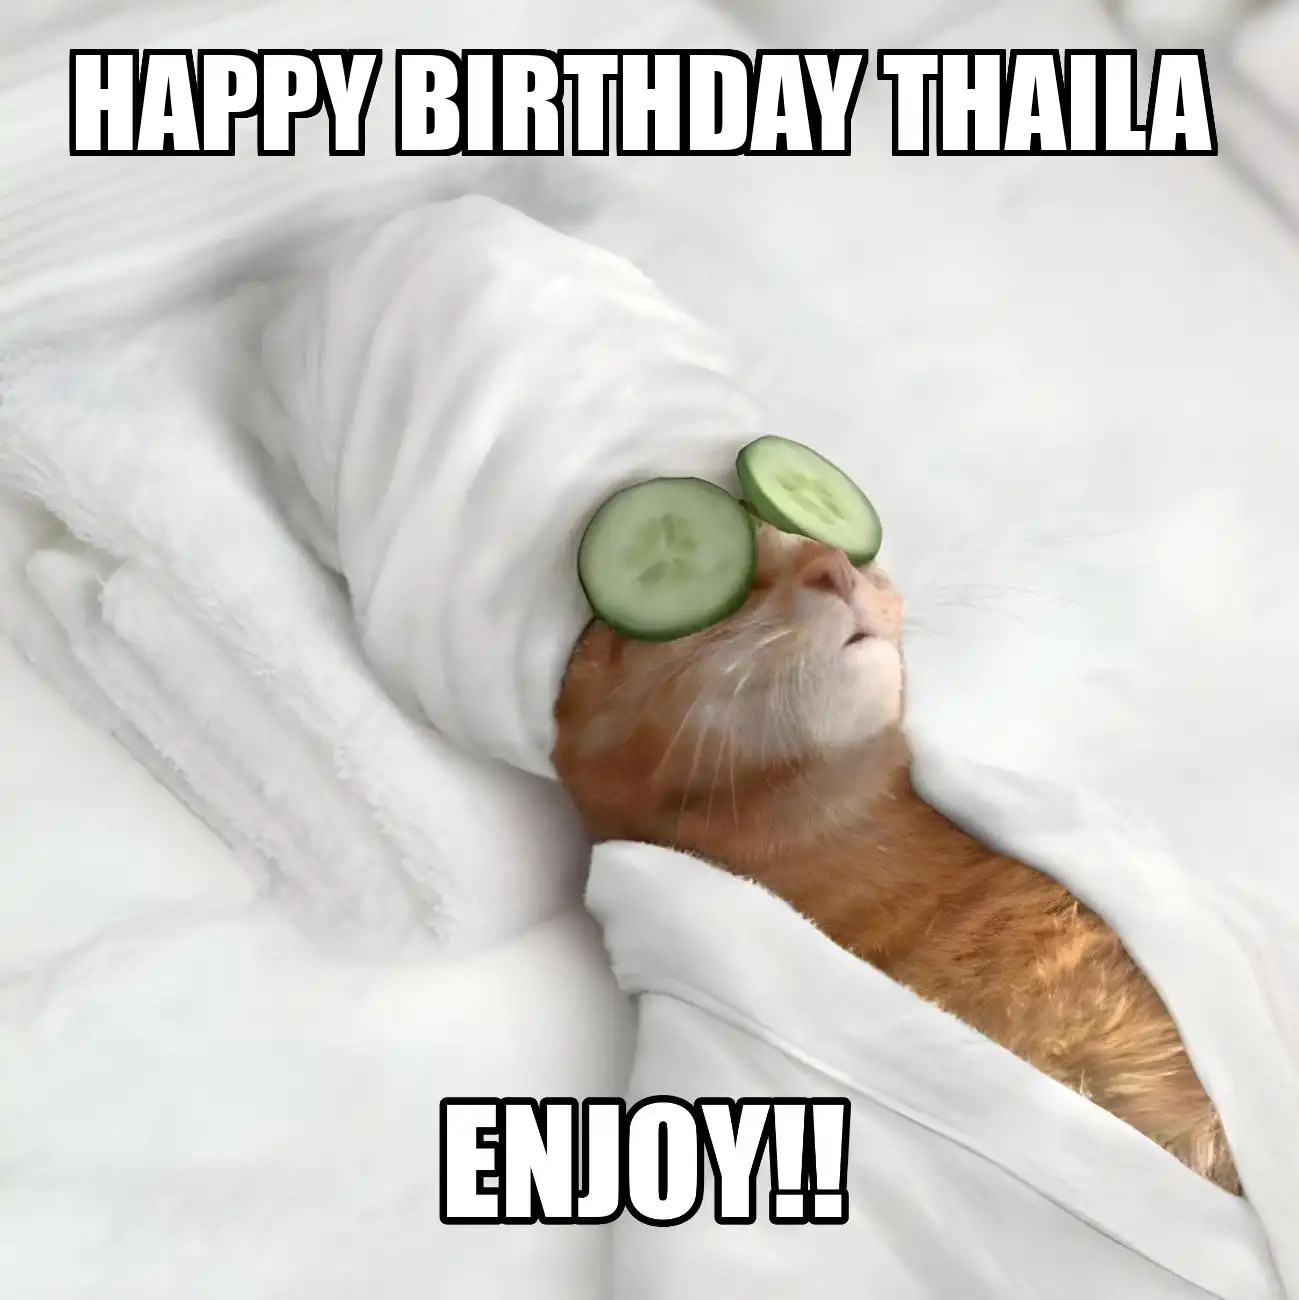 Happy Birthday Thaila Enjoy Cat Meme